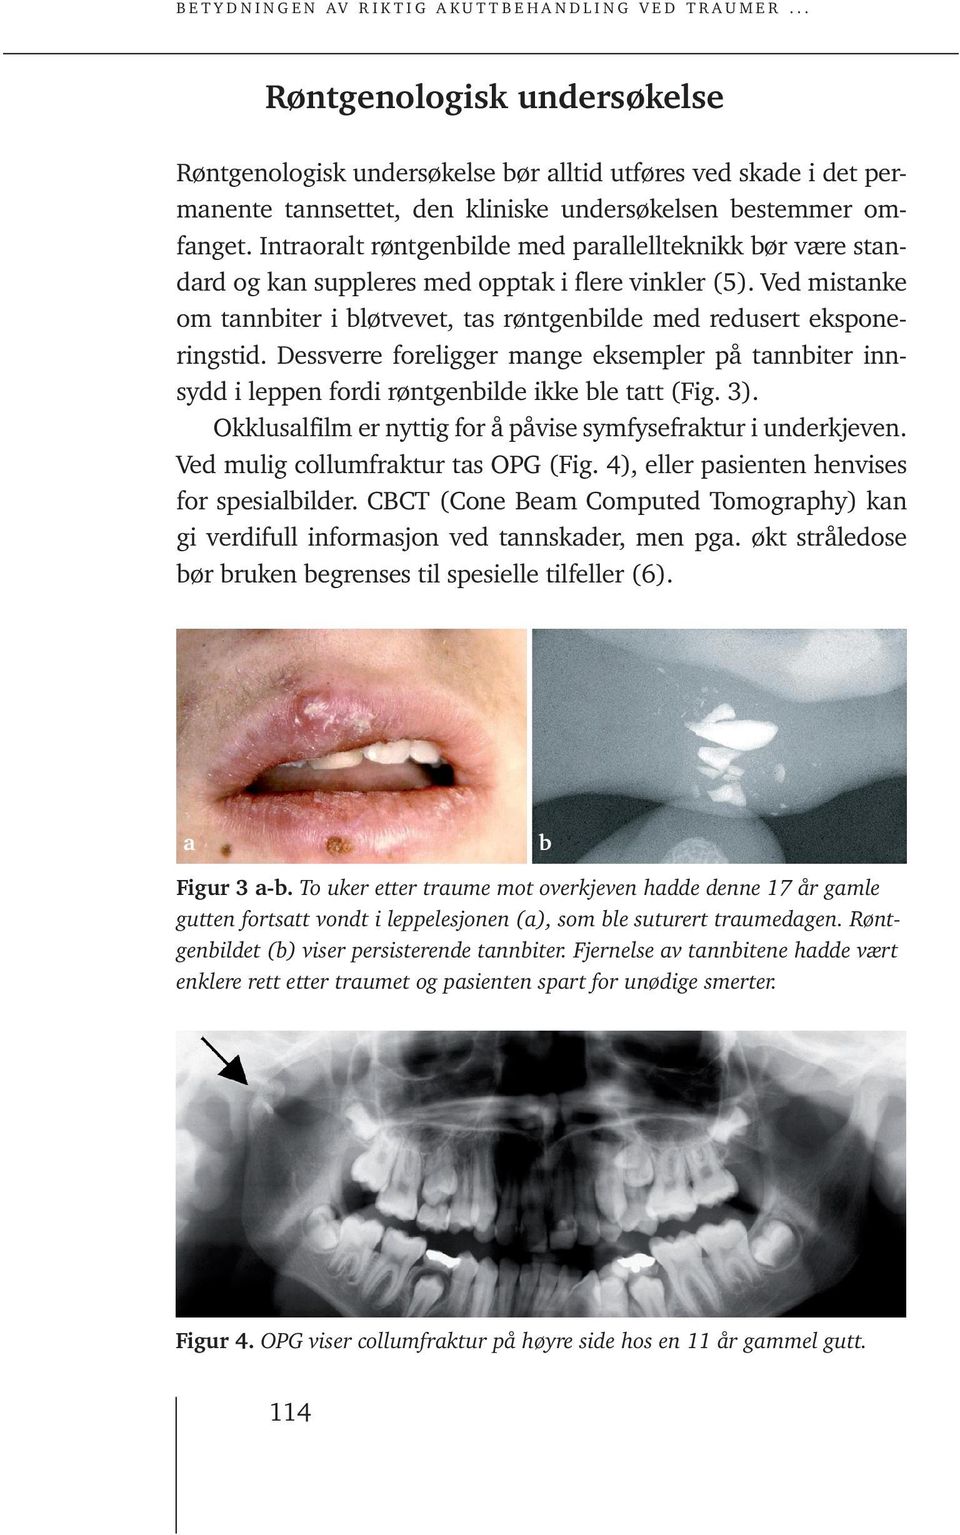 Dessverre foreligger mange eksempler på tannbiter innsydd i leppen fordi røntgenbilde ikke ble tatt (Fig. 3). Okklusalfilm er nyttig for å påvise symfysefraktur i underkjeven.